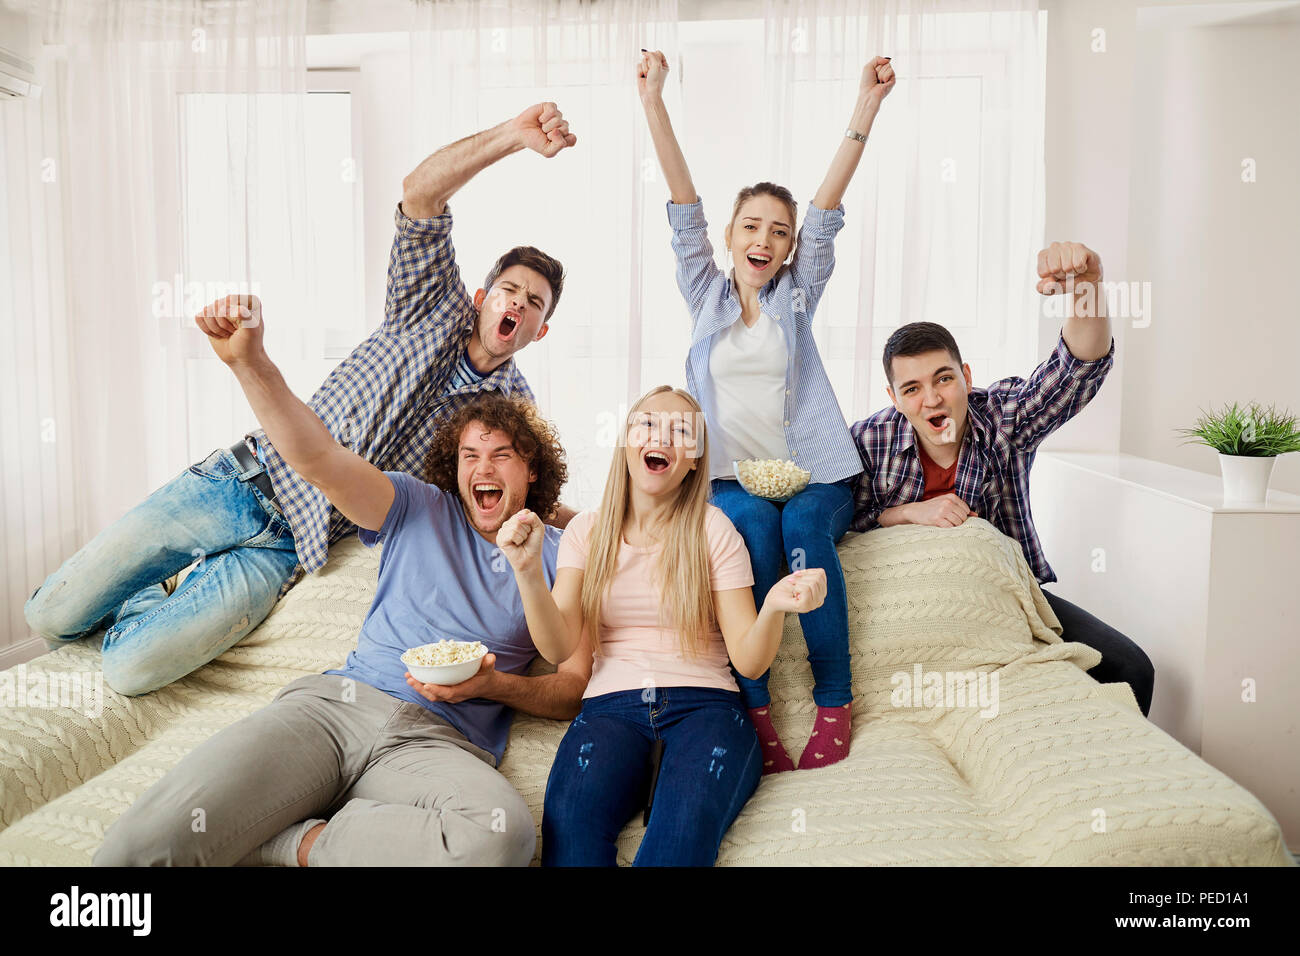 Eine Gruppe von Freunden von Fans auf eine Sport-TV auf einem Sof sitzen Stockfoto